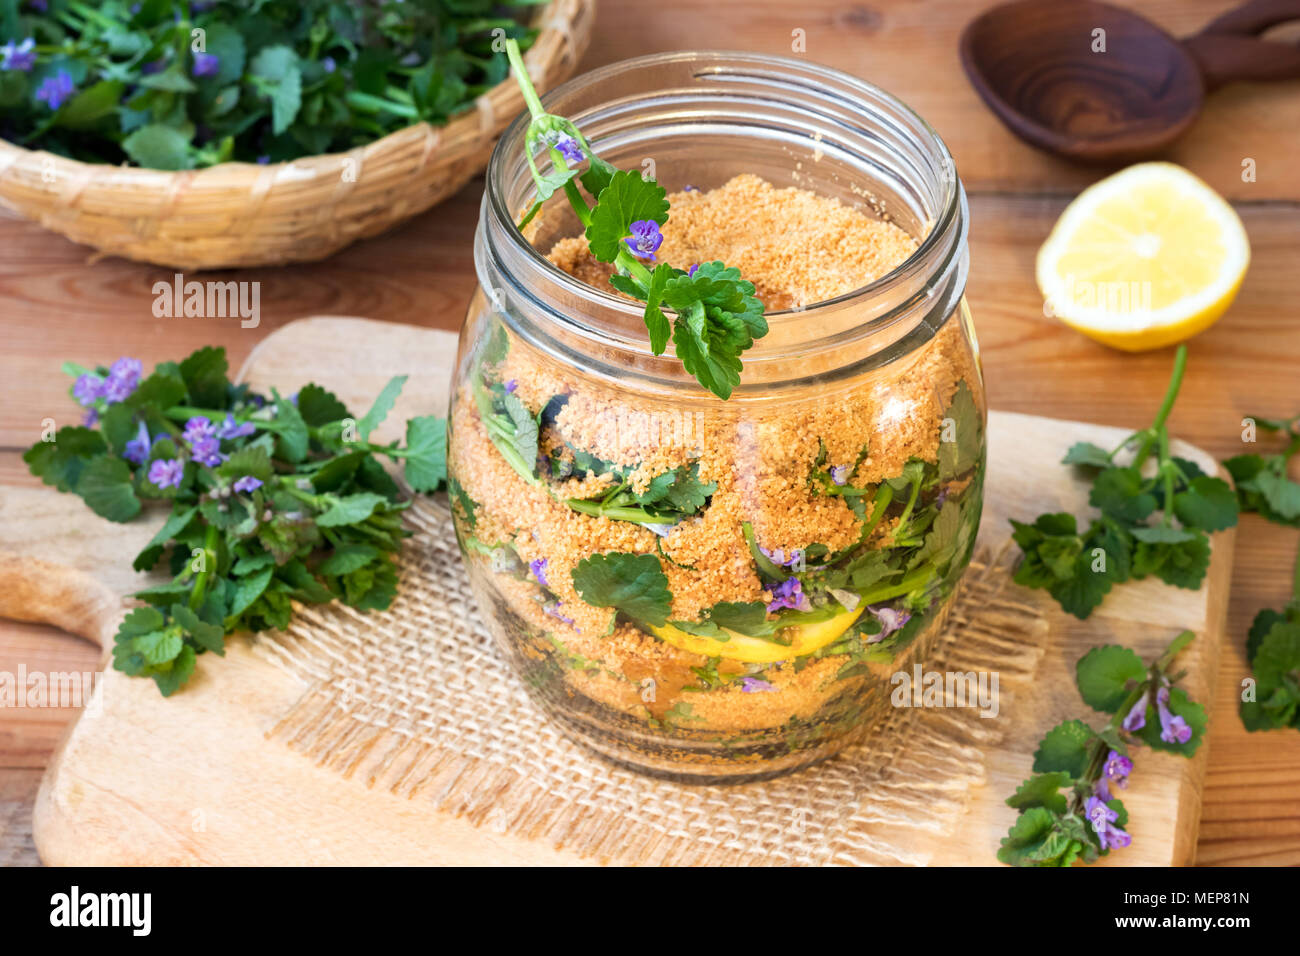 Un vaso di vetro riempito con terra-foglie d'edera e fiori di limone e zucchero di cocco, per preparare in casa lo sciroppo a base di erbe Foto Stock